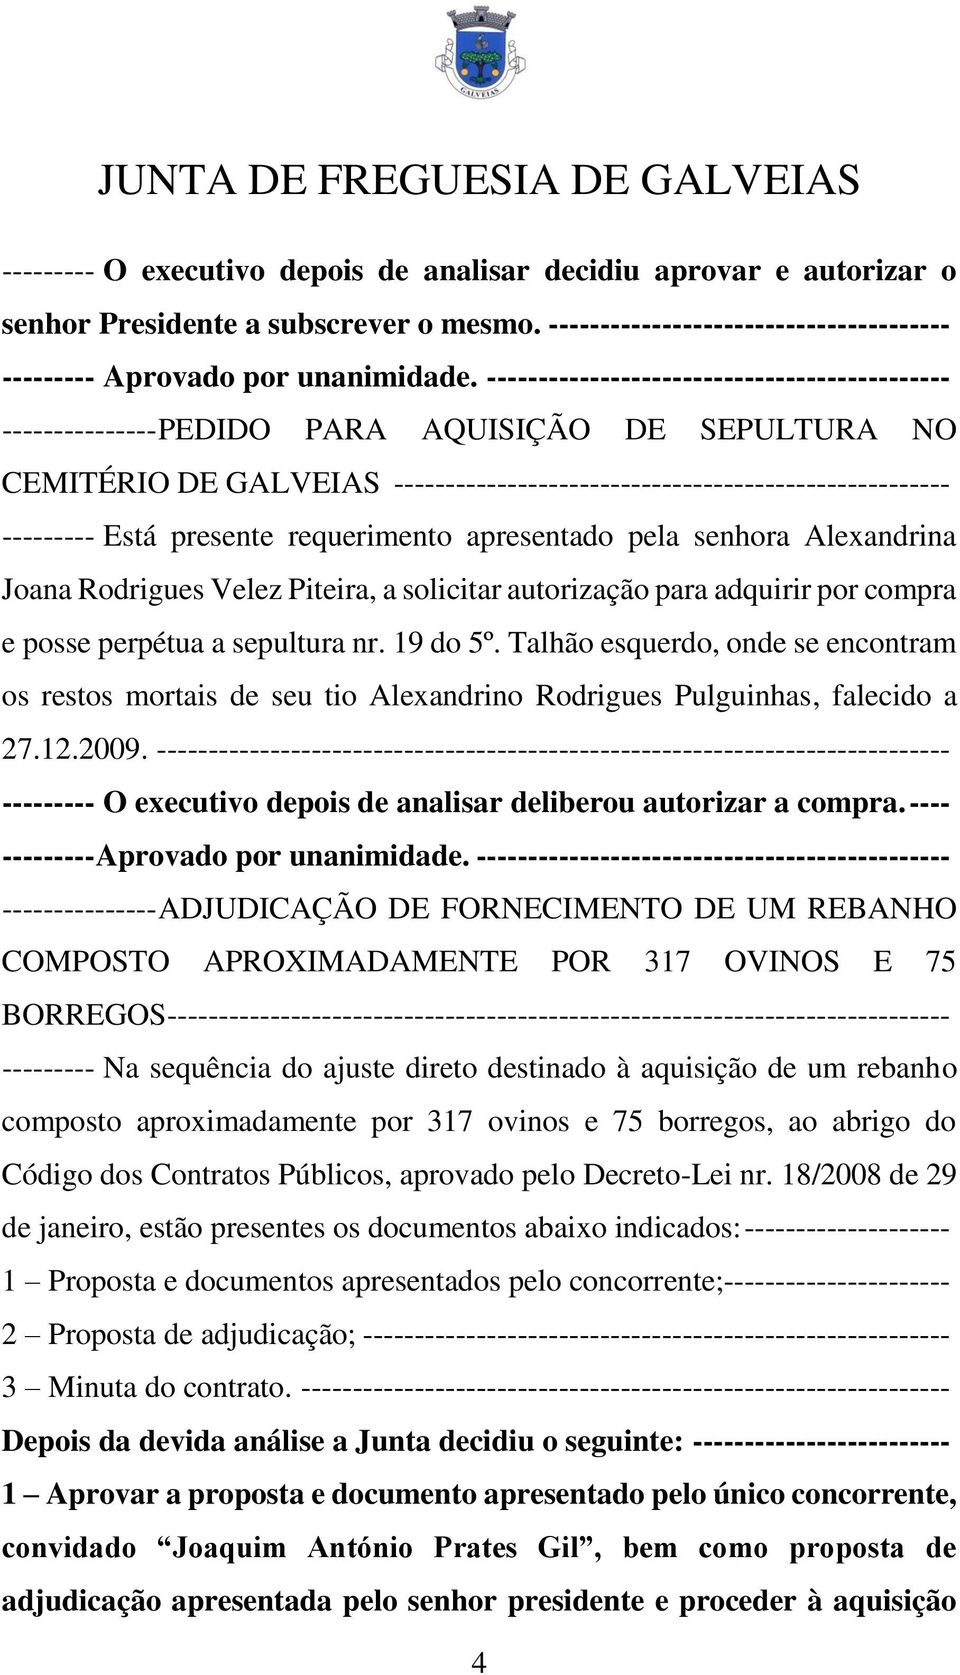 presente requerimento apresentado pela senhora Alexandrina Joana Rodrigues Velez Piteira, a solicitar autorização para adquirir por compra e posse perpétua a sepultura nr. 19 do 5º.